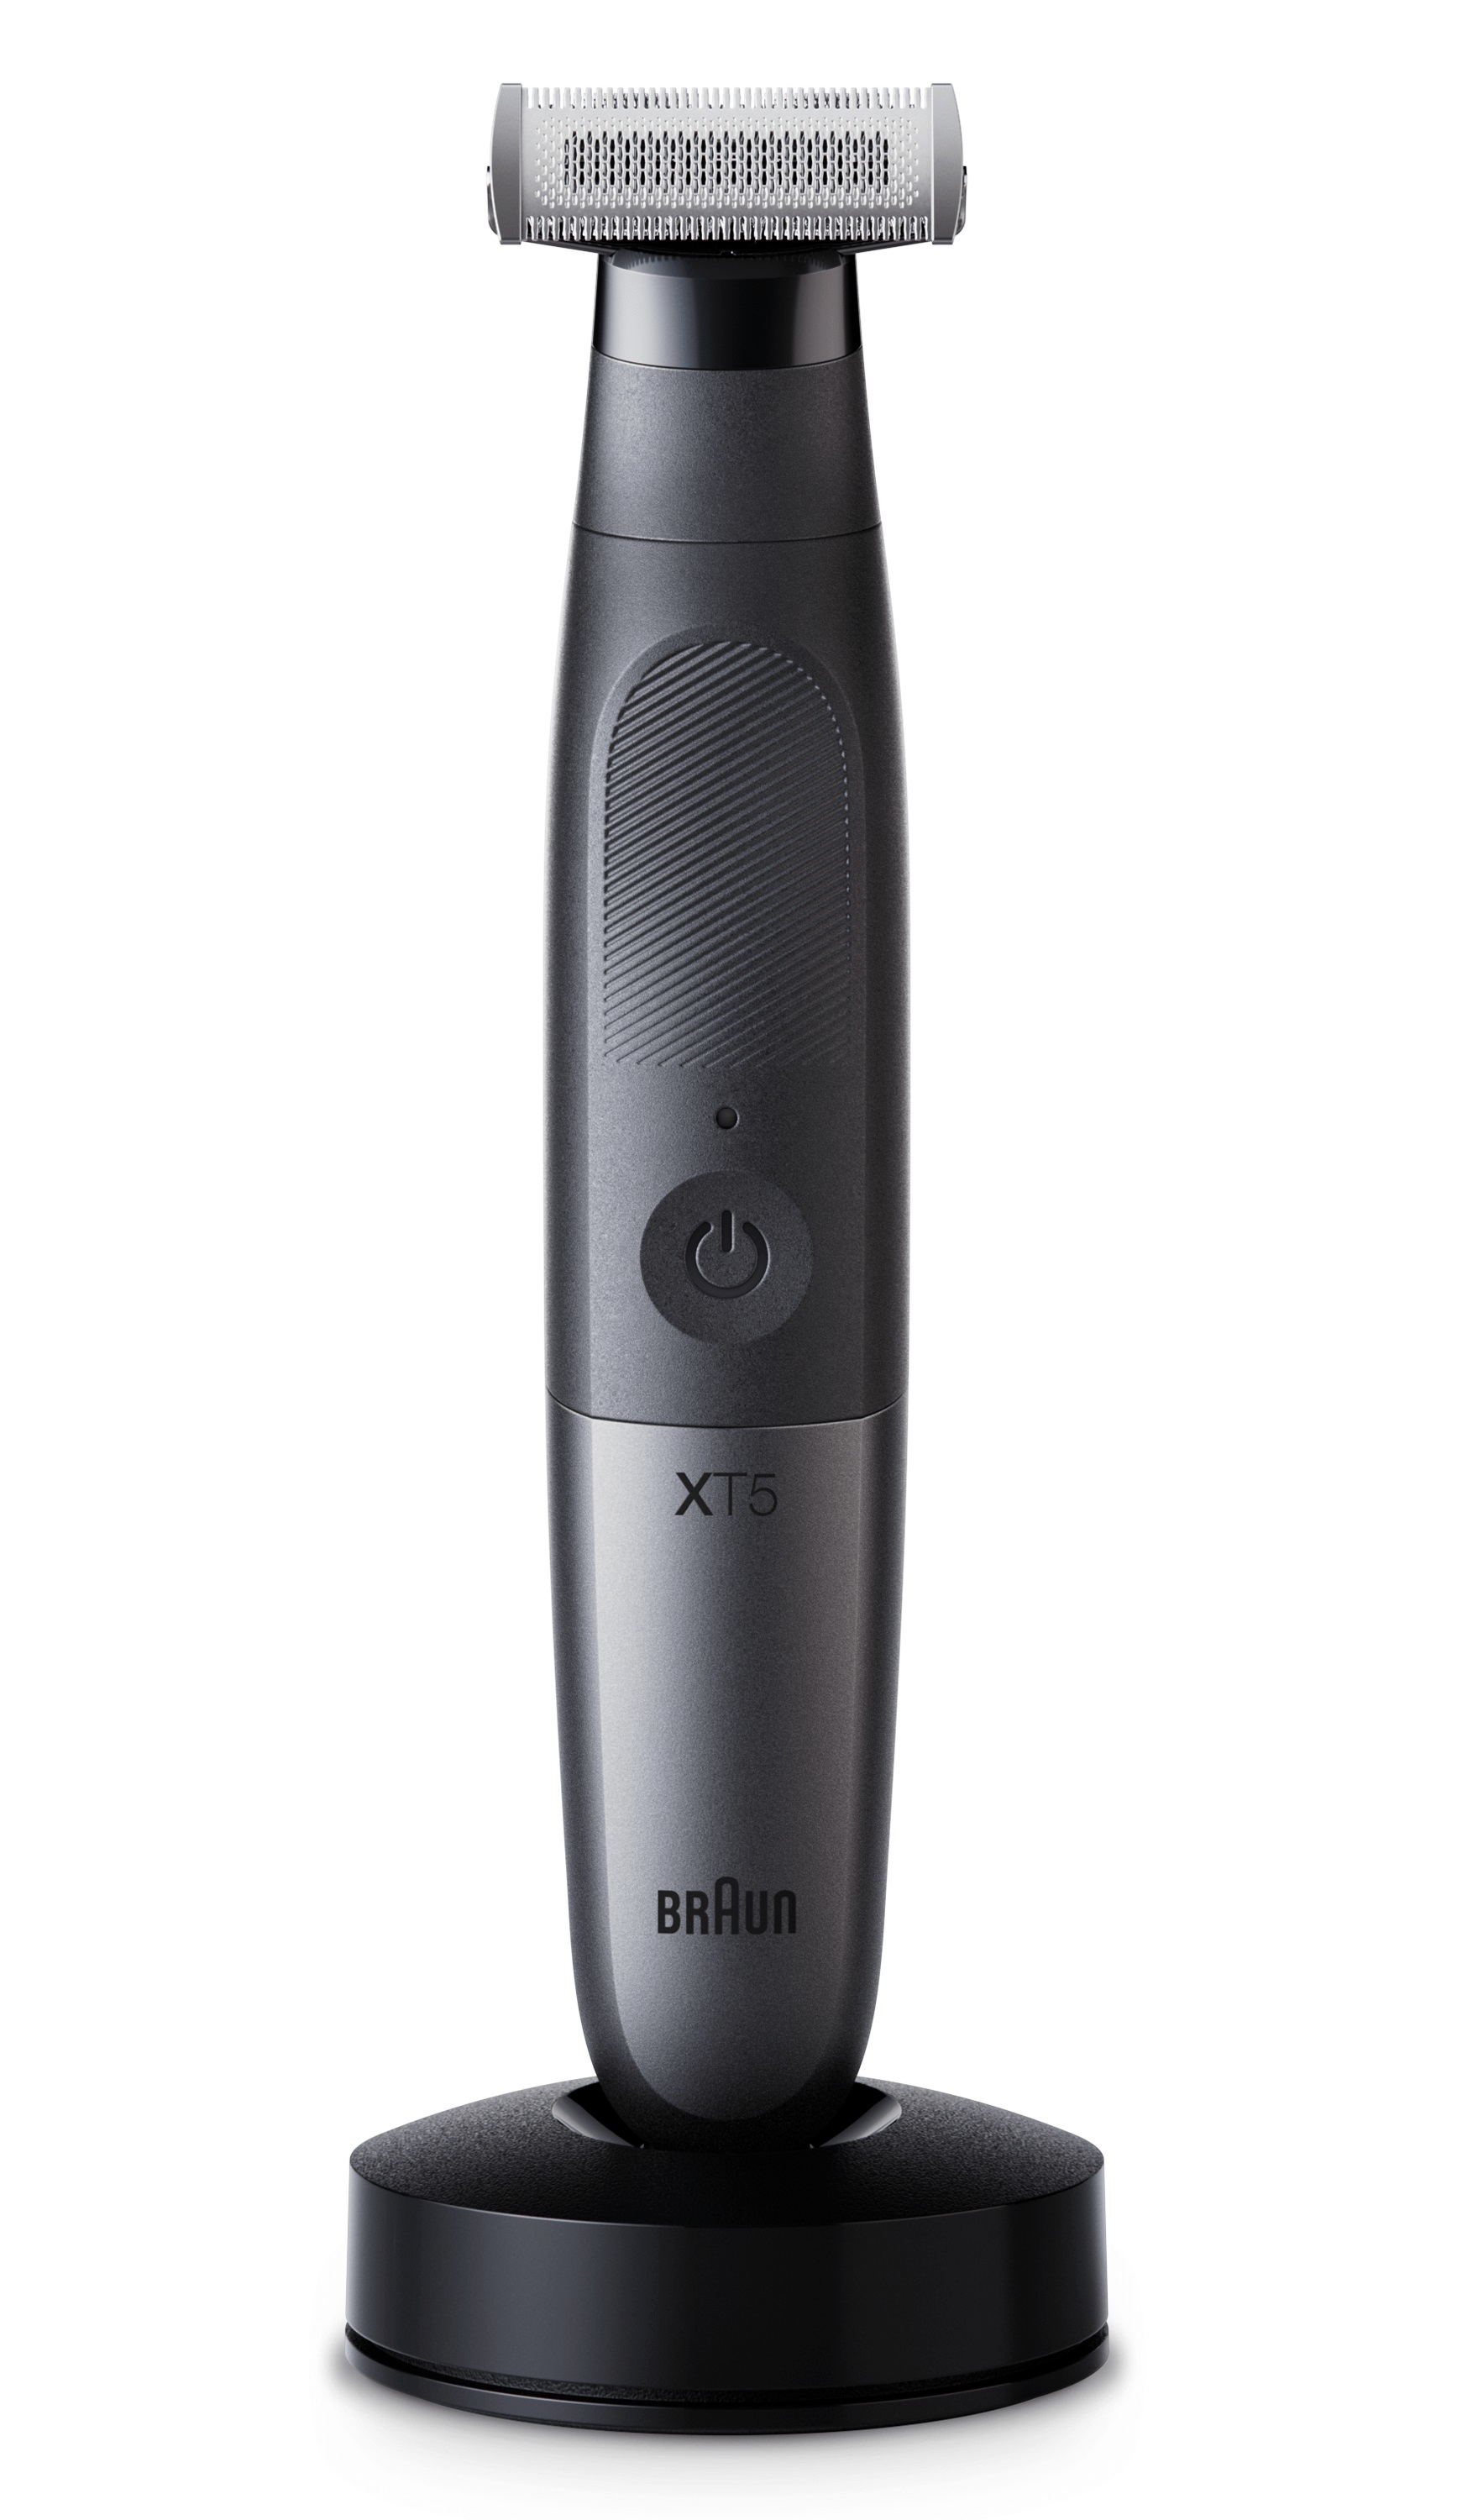 Braun Braun Series X, Baard- en lichaamstrimmer voor gezichts- en lichaamshaar, XT5300